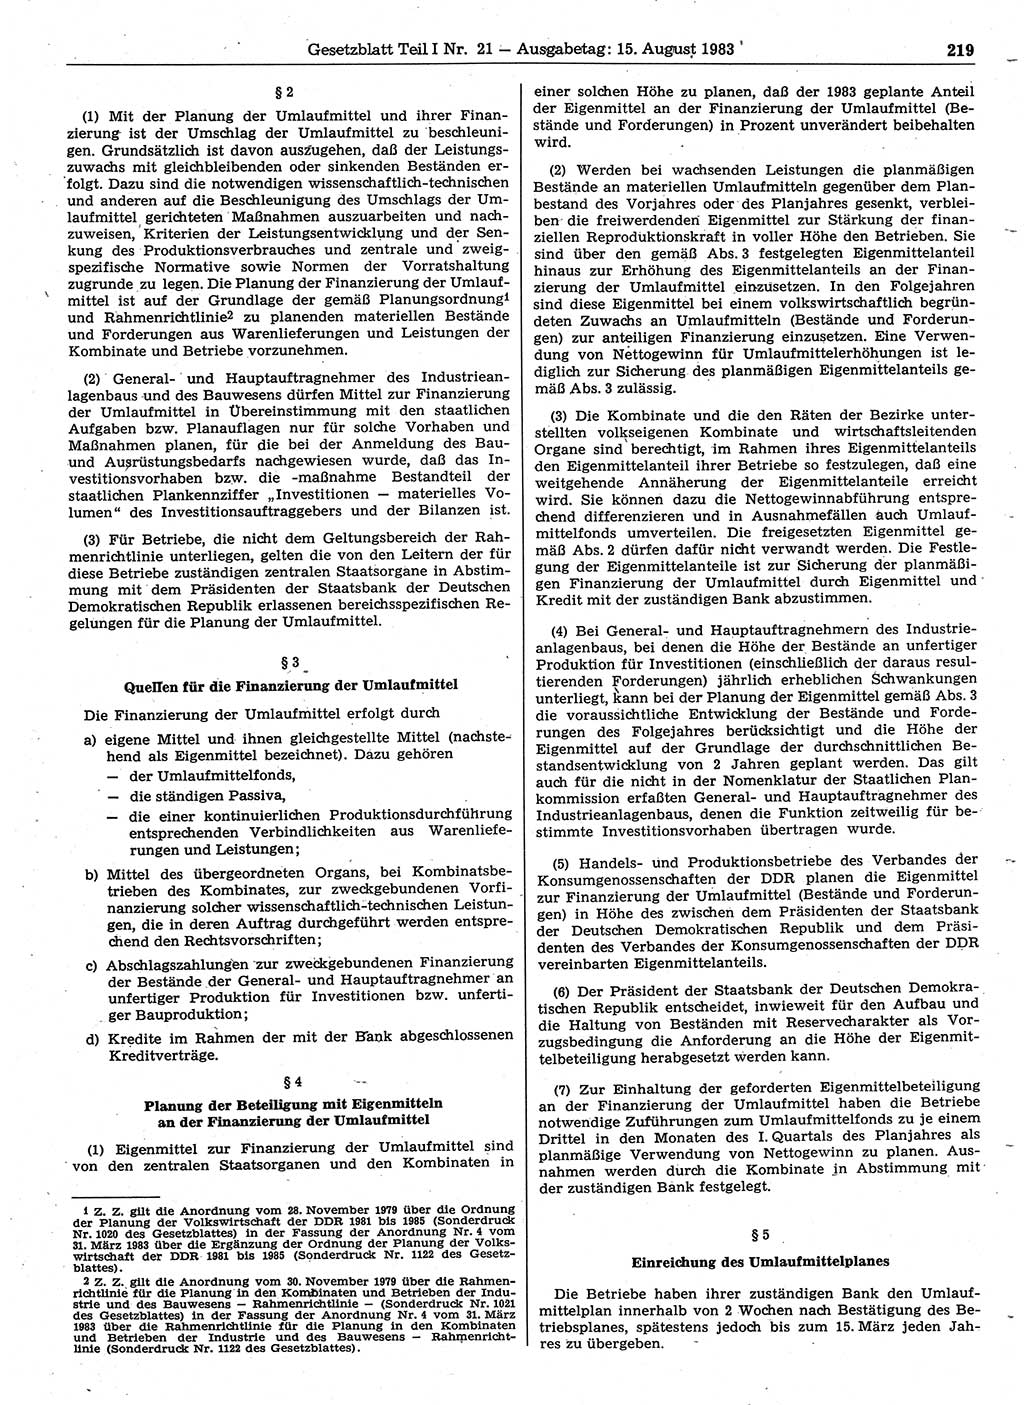 Gesetzblatt (GBl.) der Deutschen Demokratischen Republik (DDR) Teil Ⅰ 1983, Seite 219 (GBl. DDR Ⅰ 1983, S. 219)